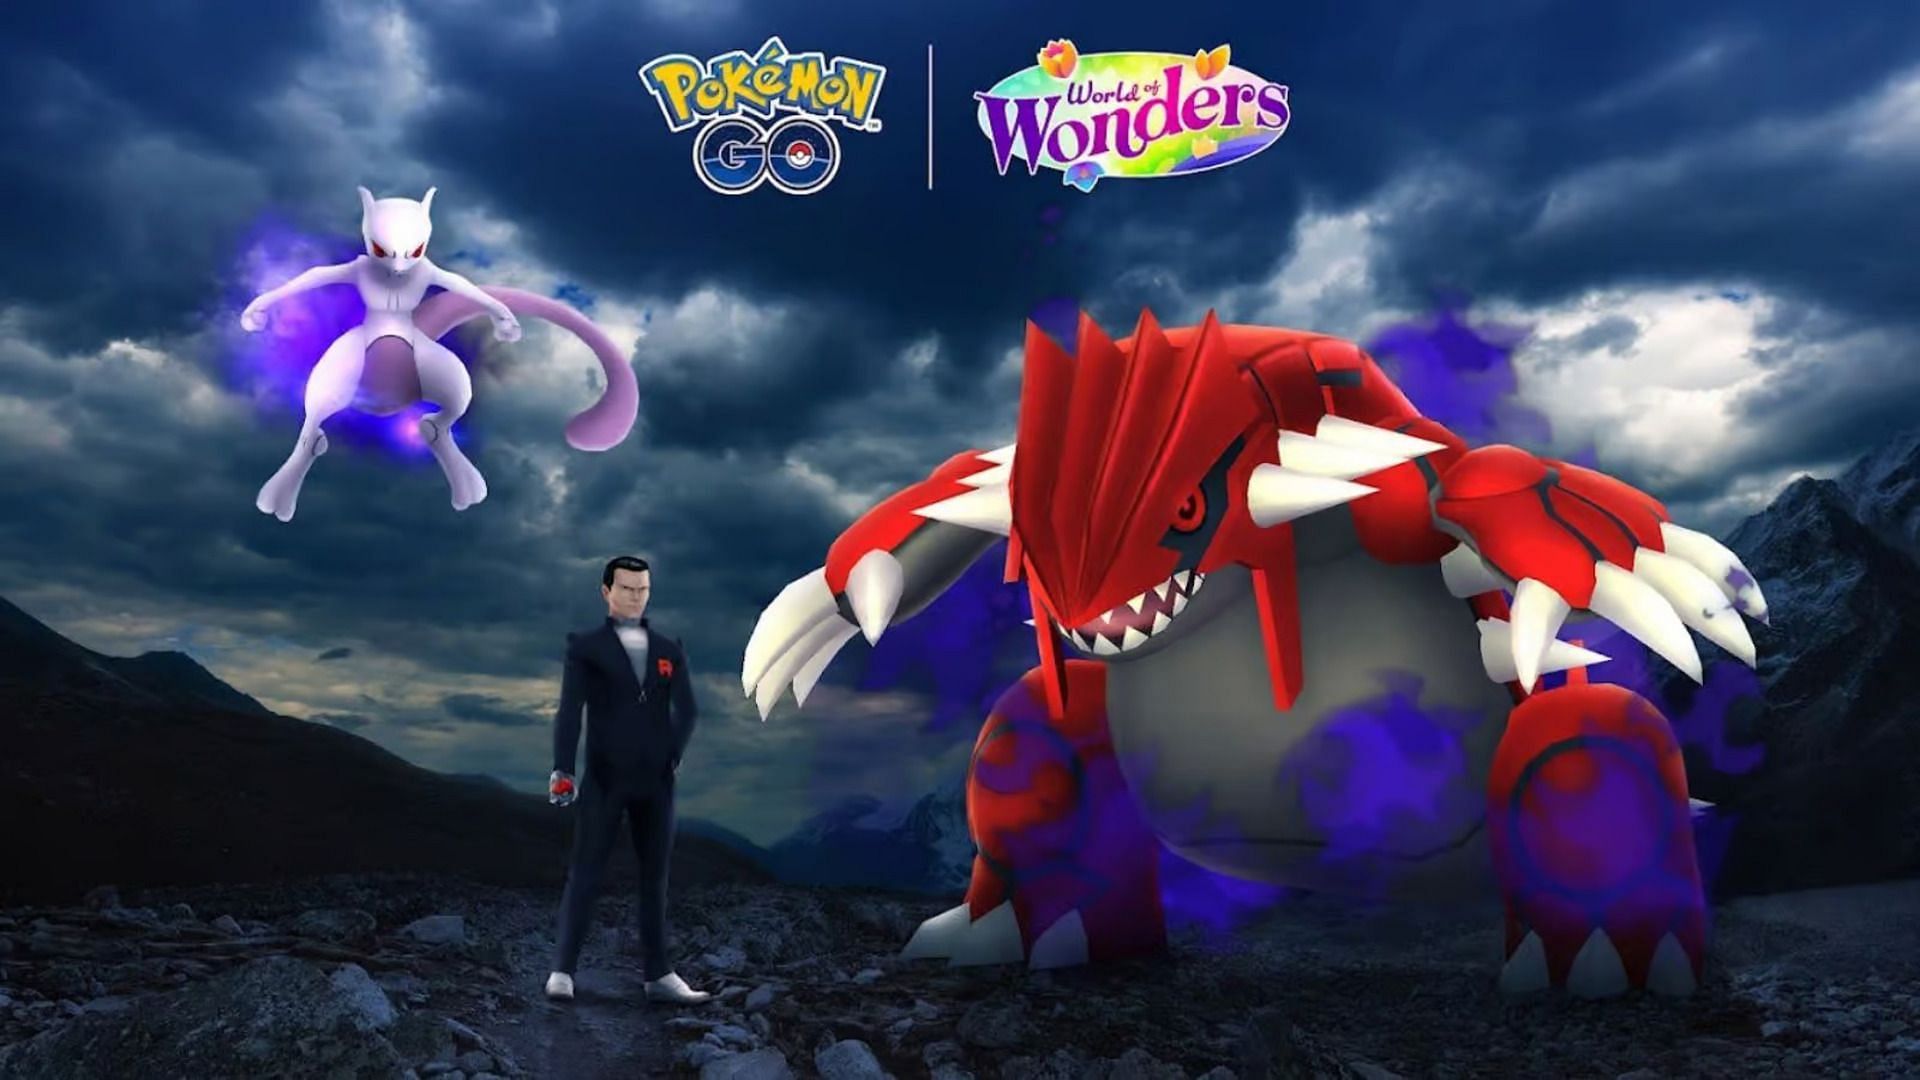 world of wonders taken over pokemon go